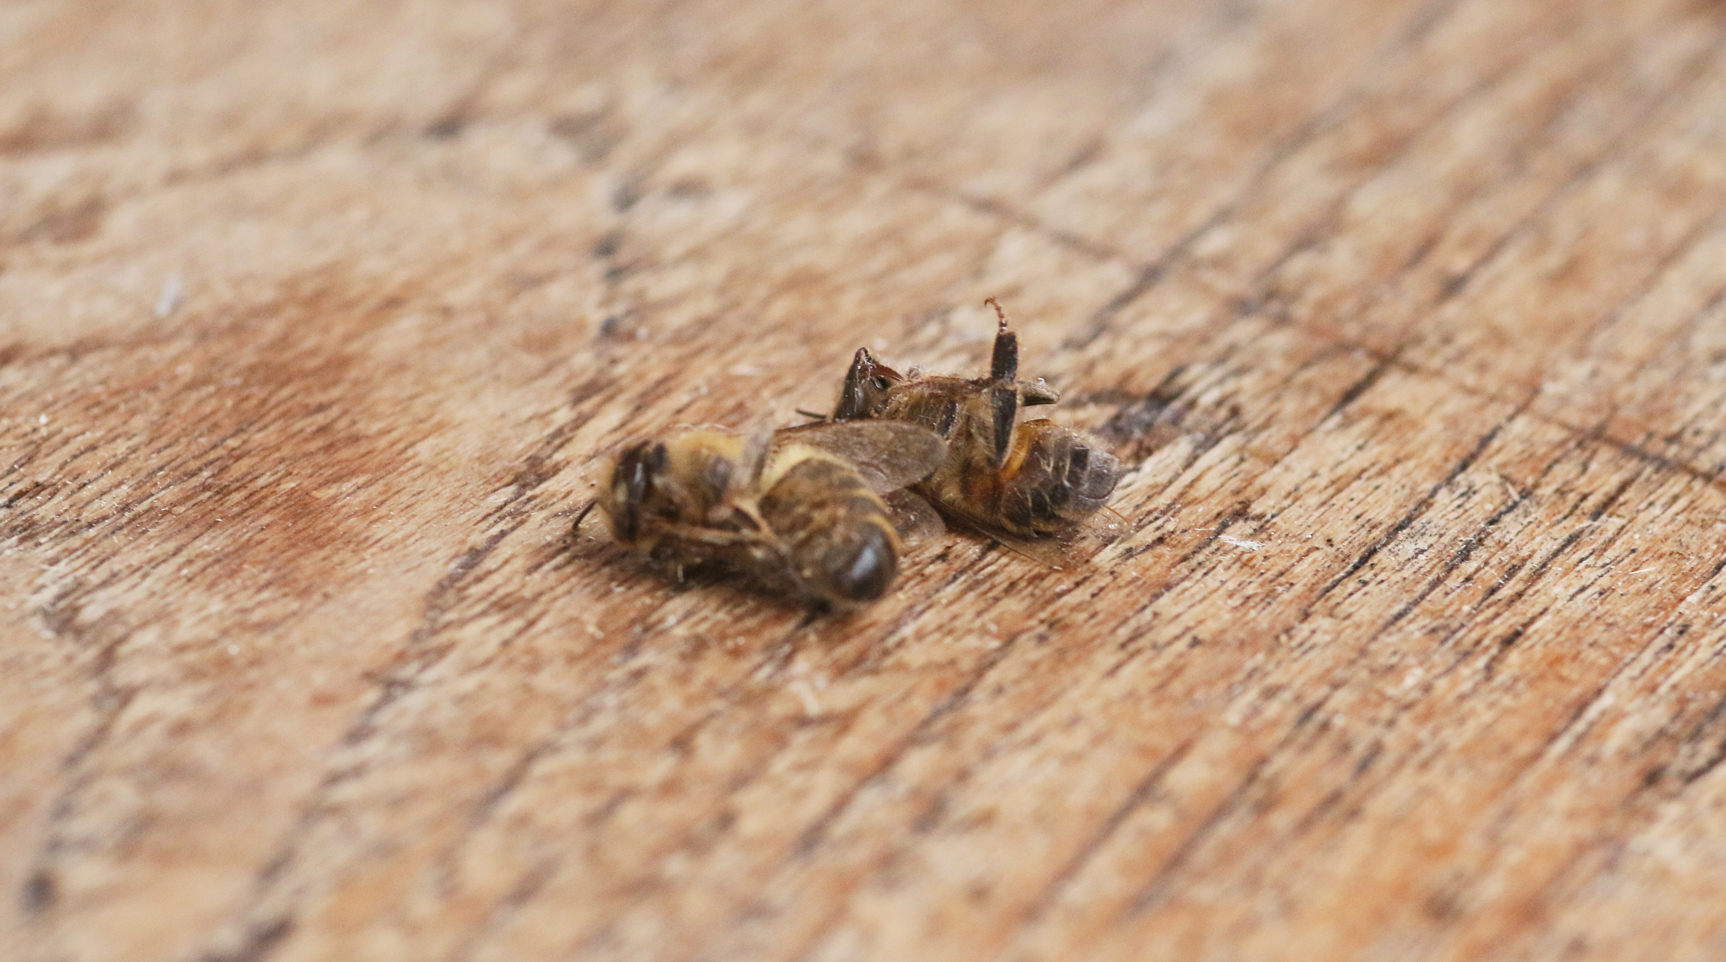 Imker sind auf giftfreie Landschaften angewiesen. Glyphosat zerstört u.a. Gedächtnis und Orientierungsvermögen von Bienen. Foto: Janine Fritsch